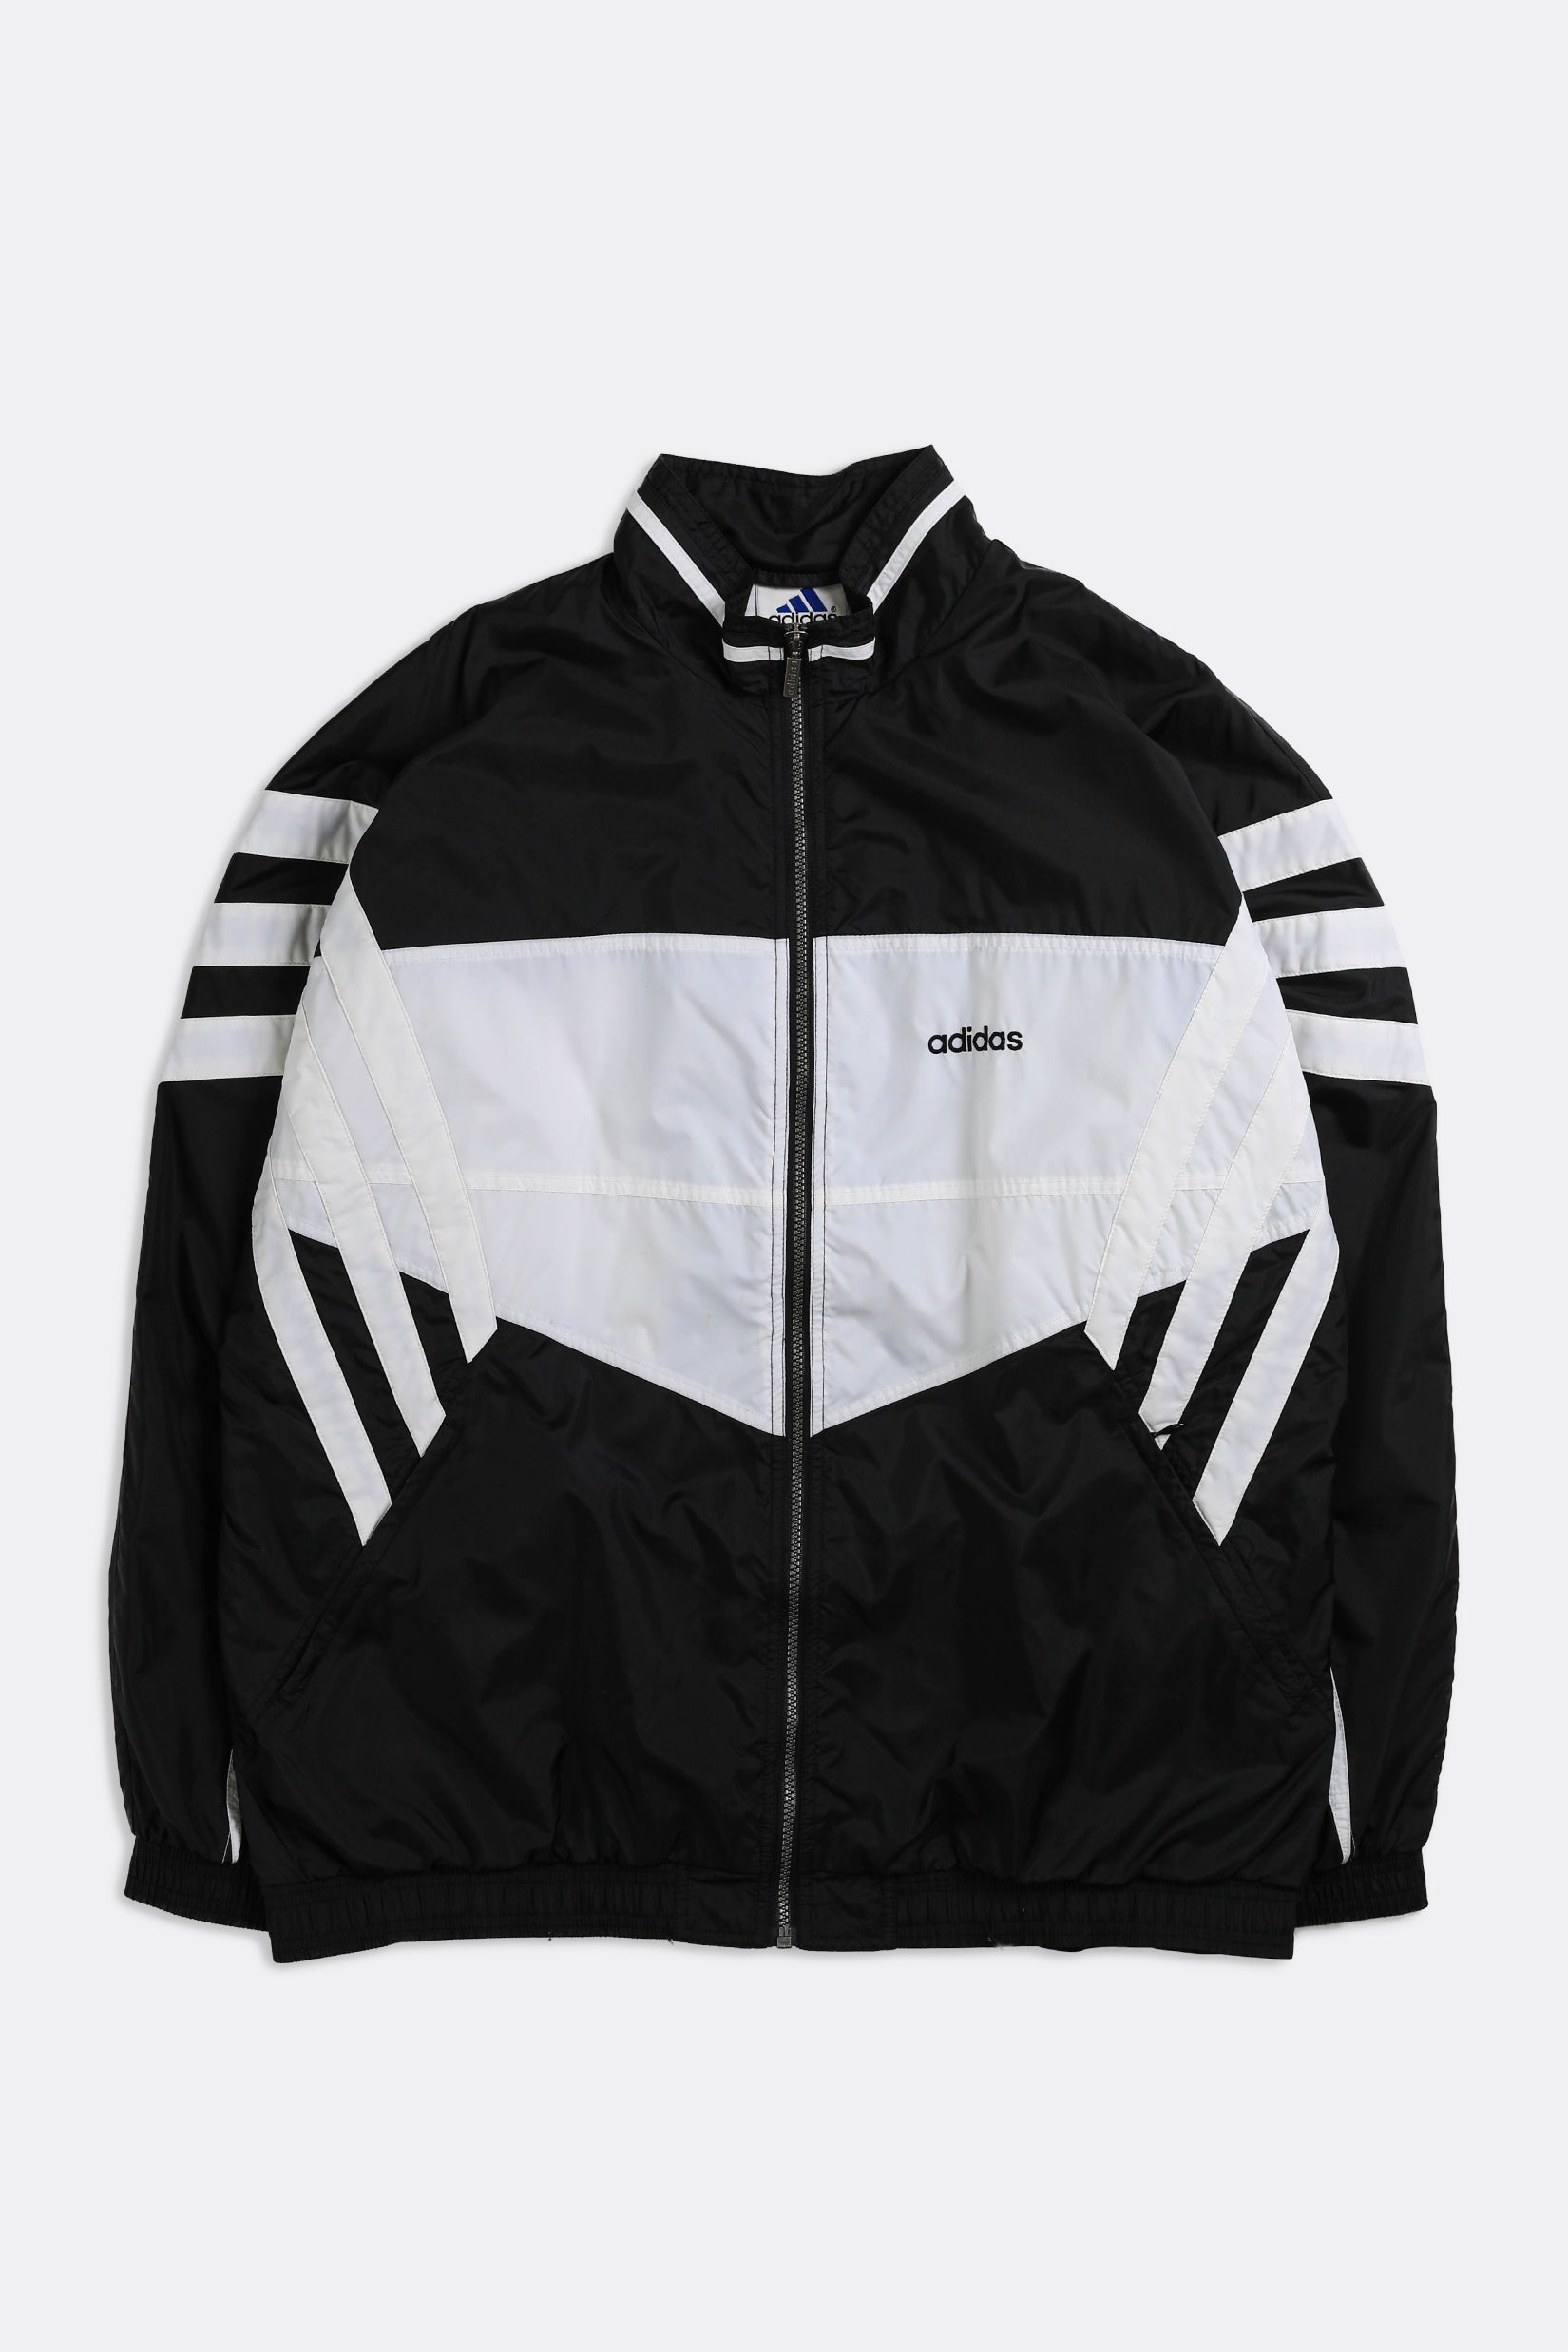 Vintage Adidas Windbreaker Jacket – Frankie